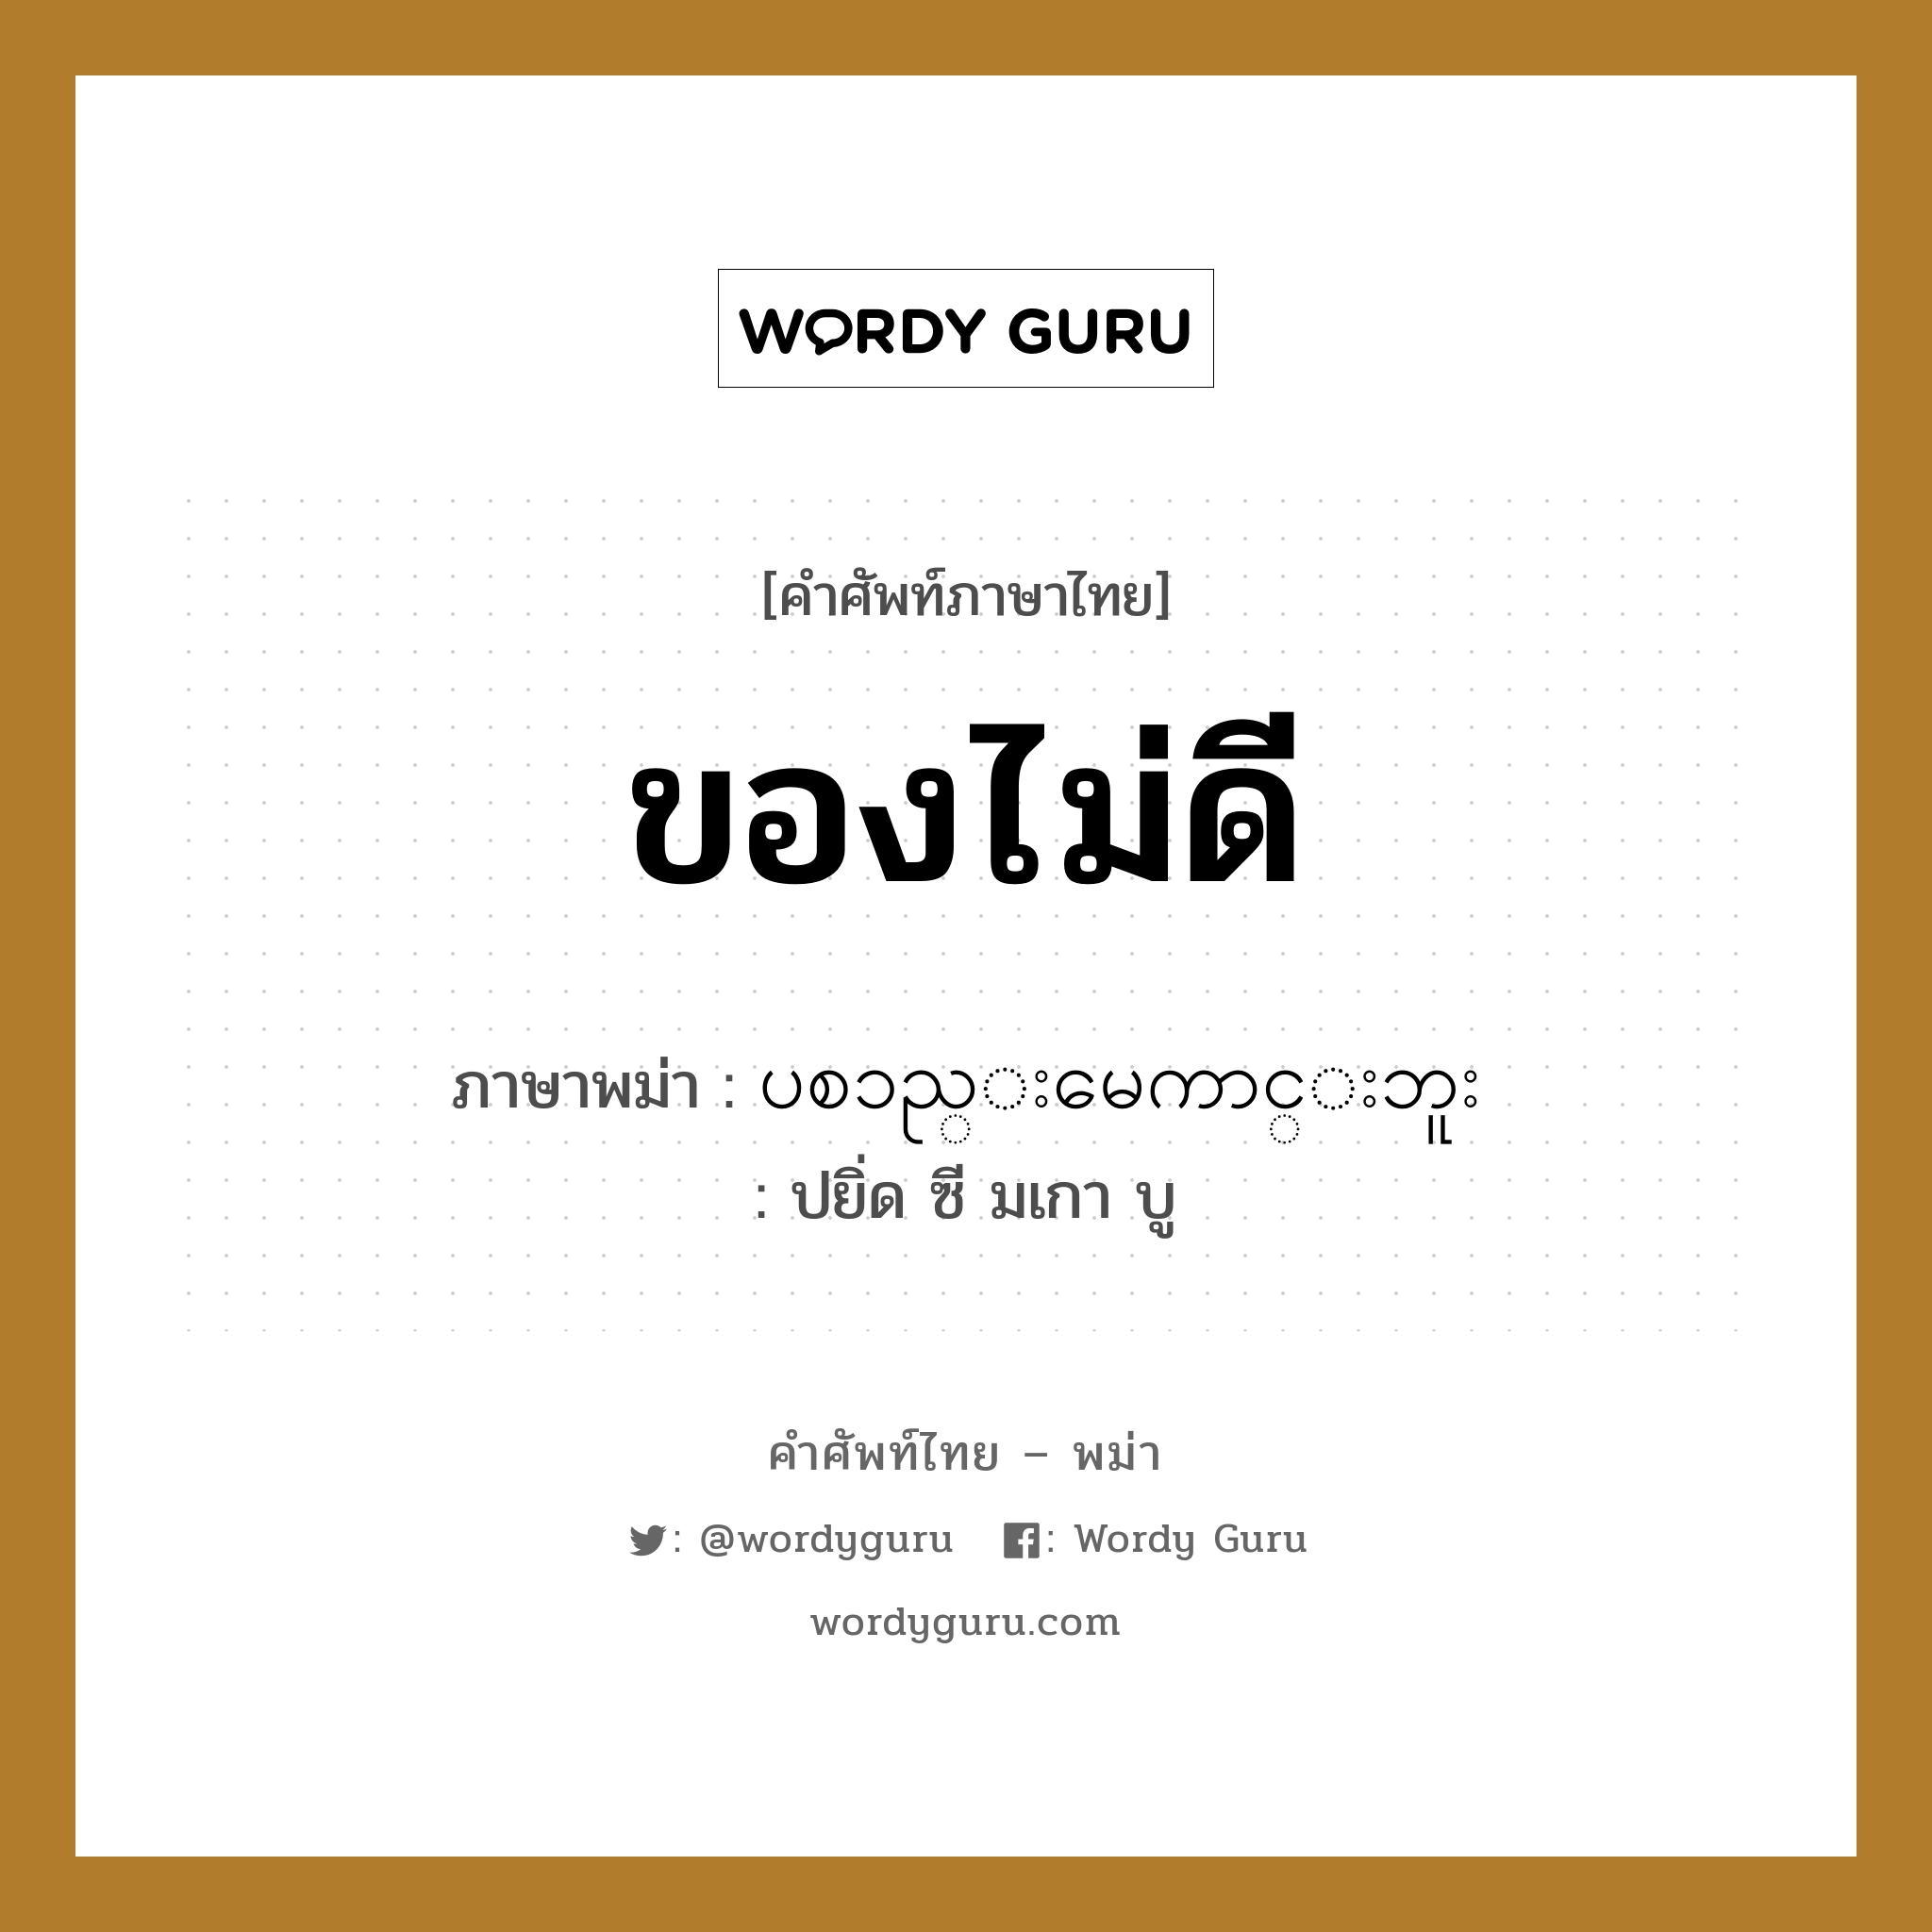 ของไม่ดี ภาษาพม่าคืออะไร, คำศัพท์ภาษาไทย - พม่า ของไม่ดี ภาษาพม่า ပစၥည္းမေကာင္းဘူး หมวด บทสนทนาการซื้อขาย ปยิ่ด ซี มเกา บู หมวด บทสนทนาการซื้อขาย